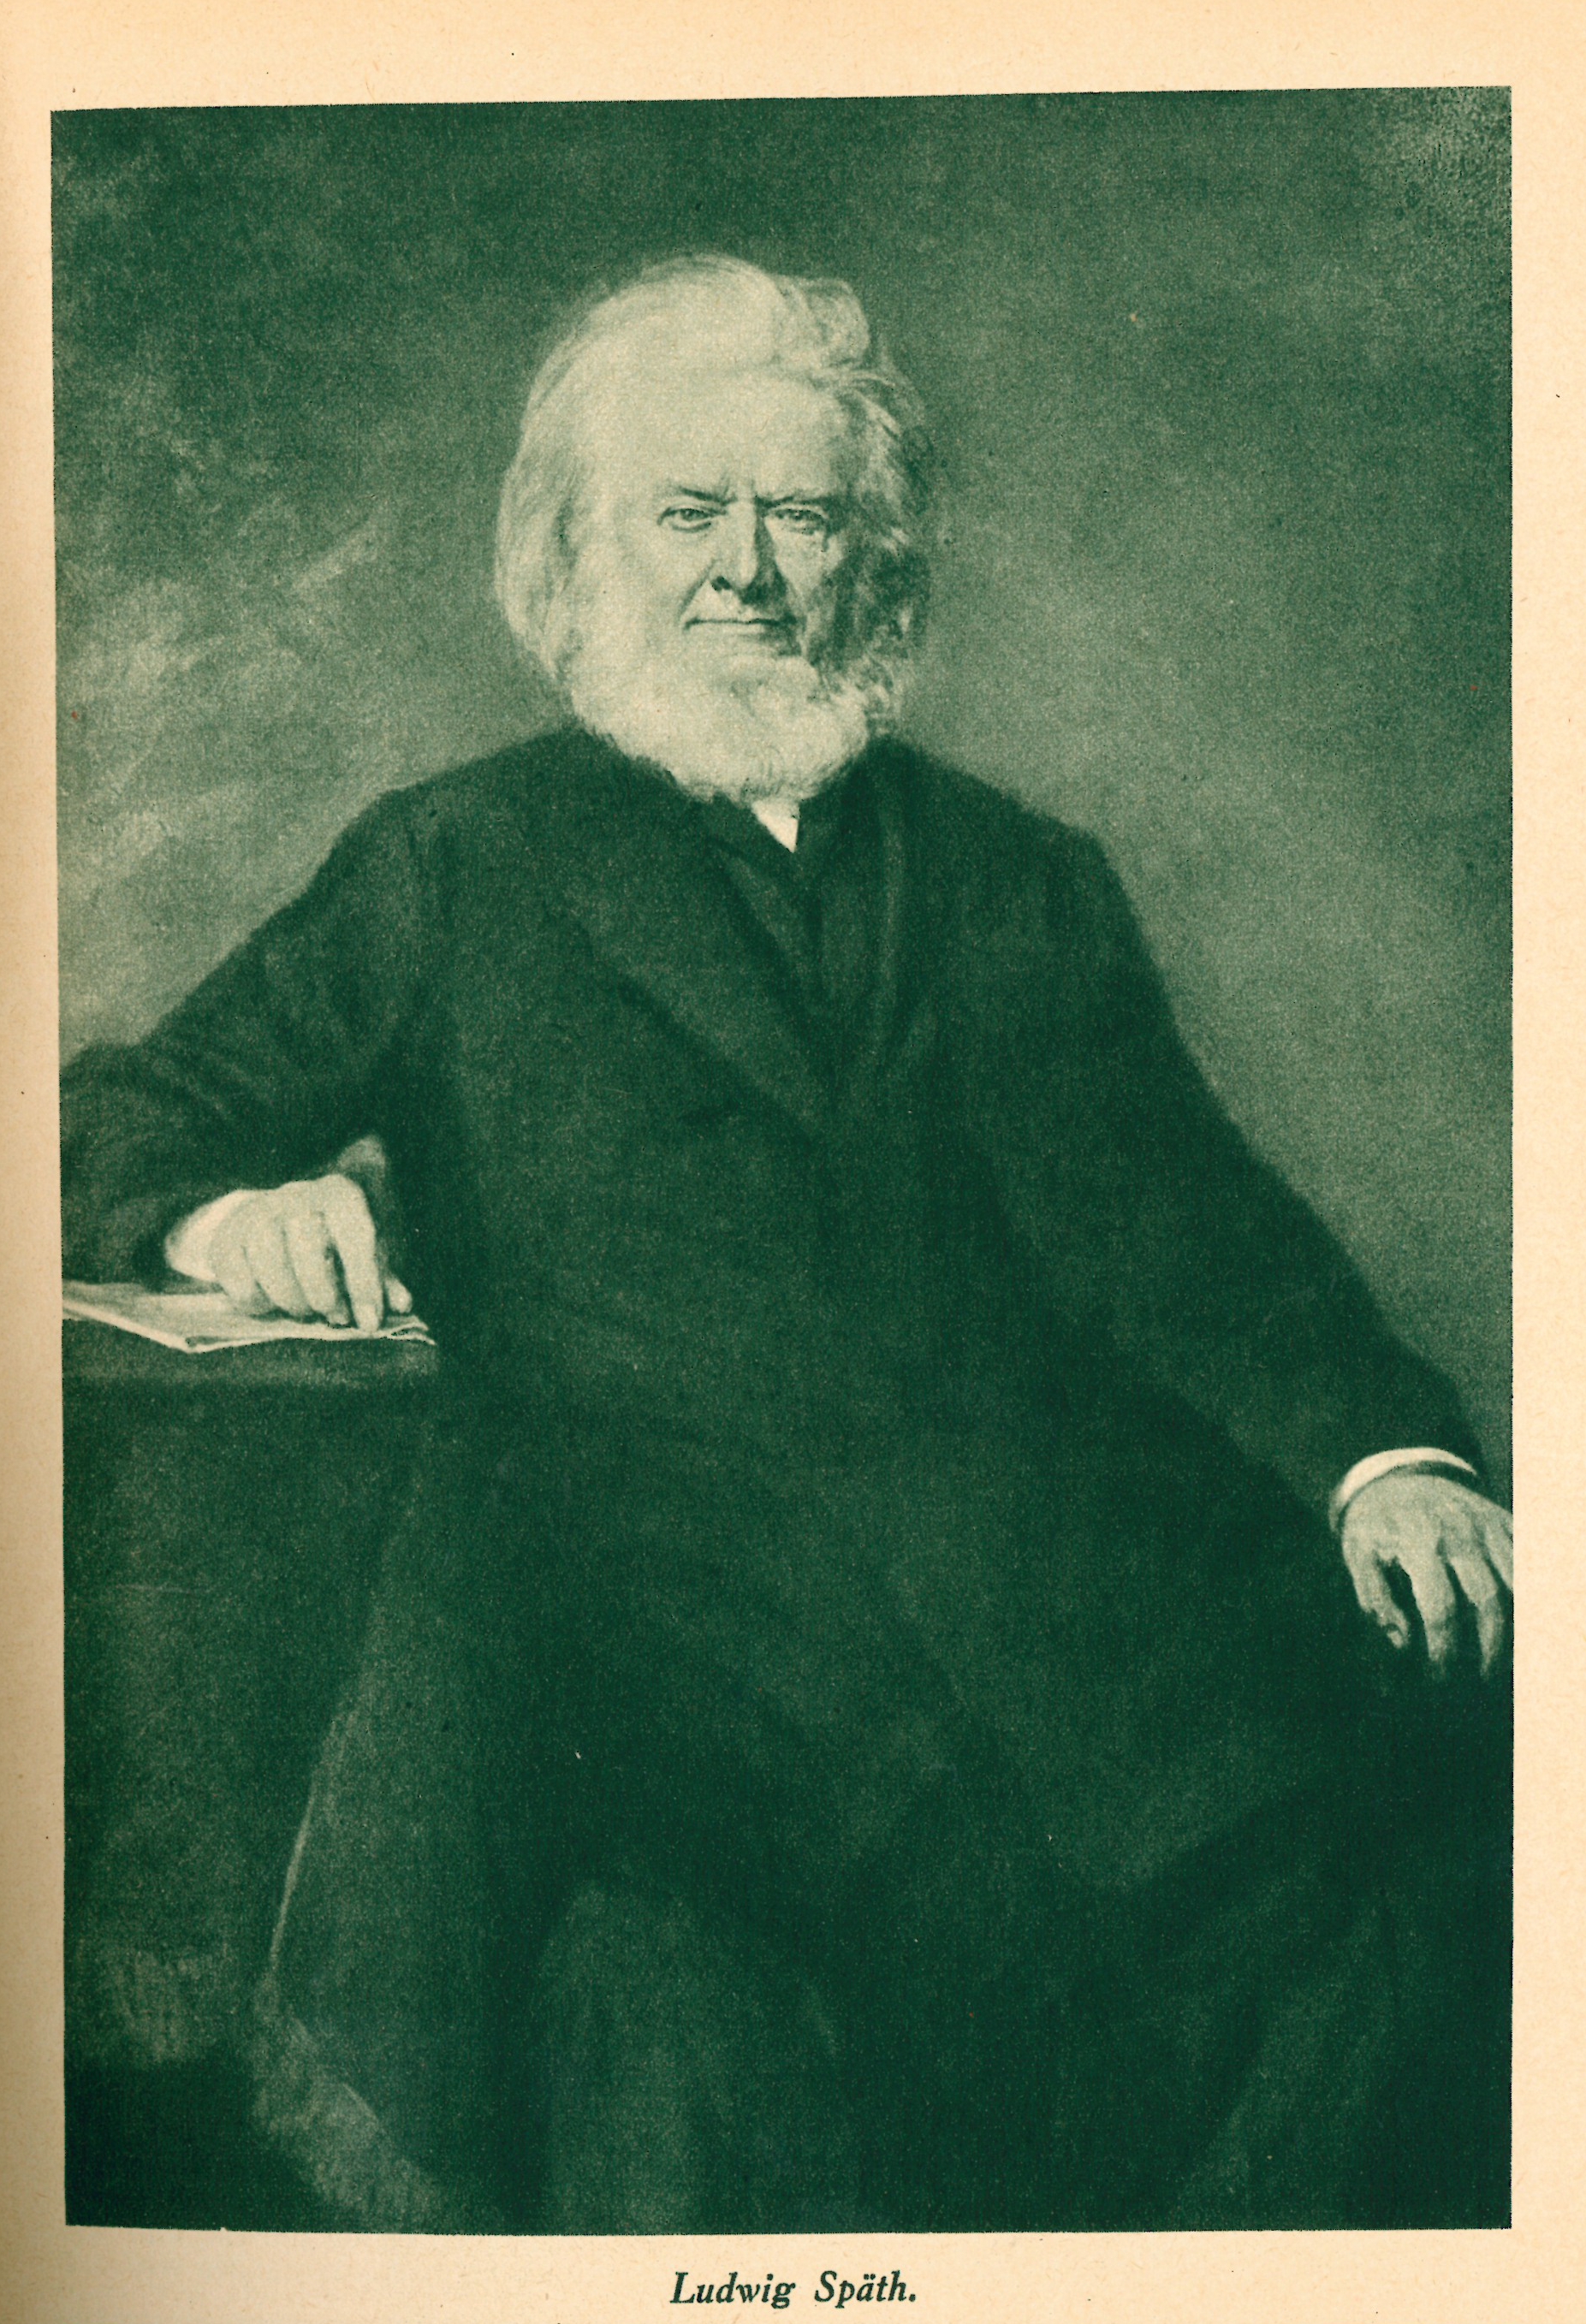 Ludwig Späth